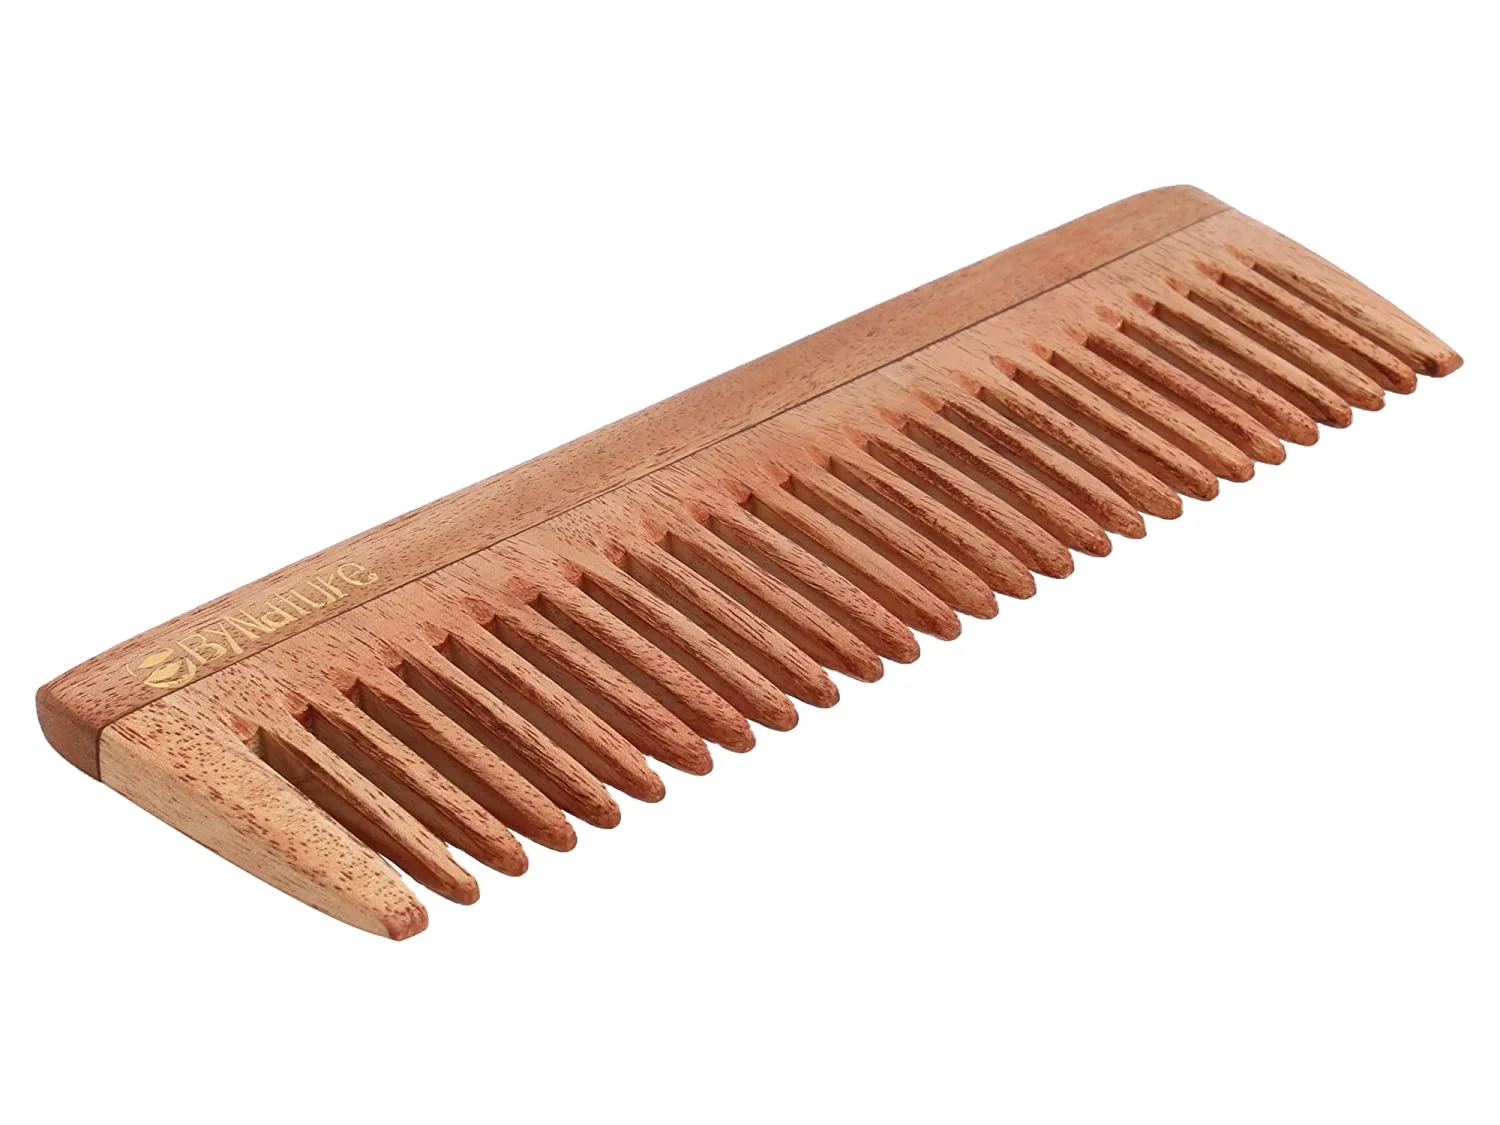 Wood Comb 29.5x25.6. Neem Comb. Расчетса made Spain. Wood Comb. 100 гребень